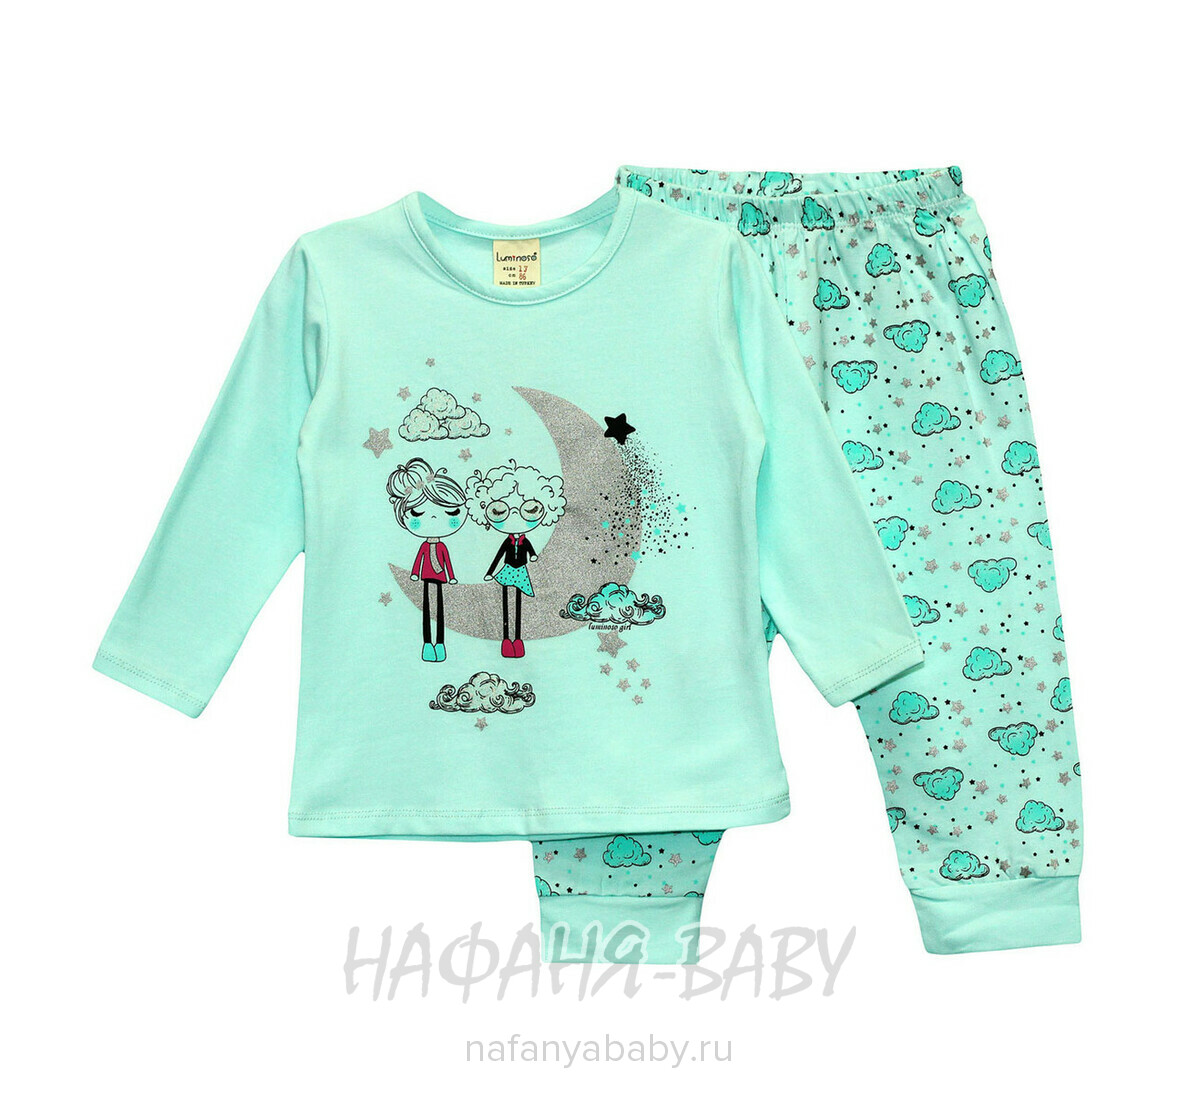 Детский костюм (лонгслив+брюки) LUMINOSO, купить в интернет магазине Нафаня. арт: 957, цвет аквамариновый